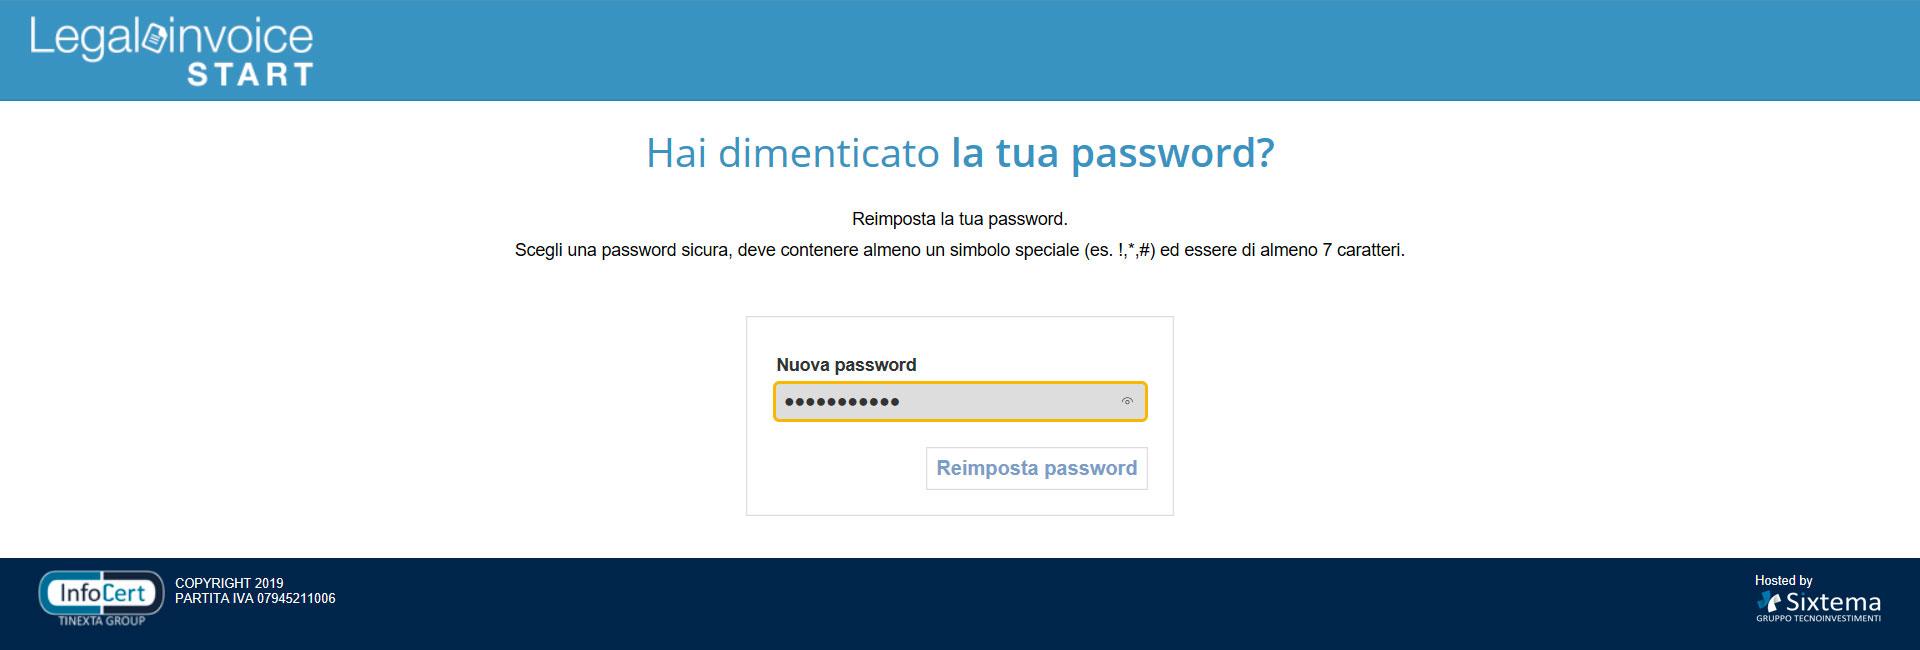 Nuova password